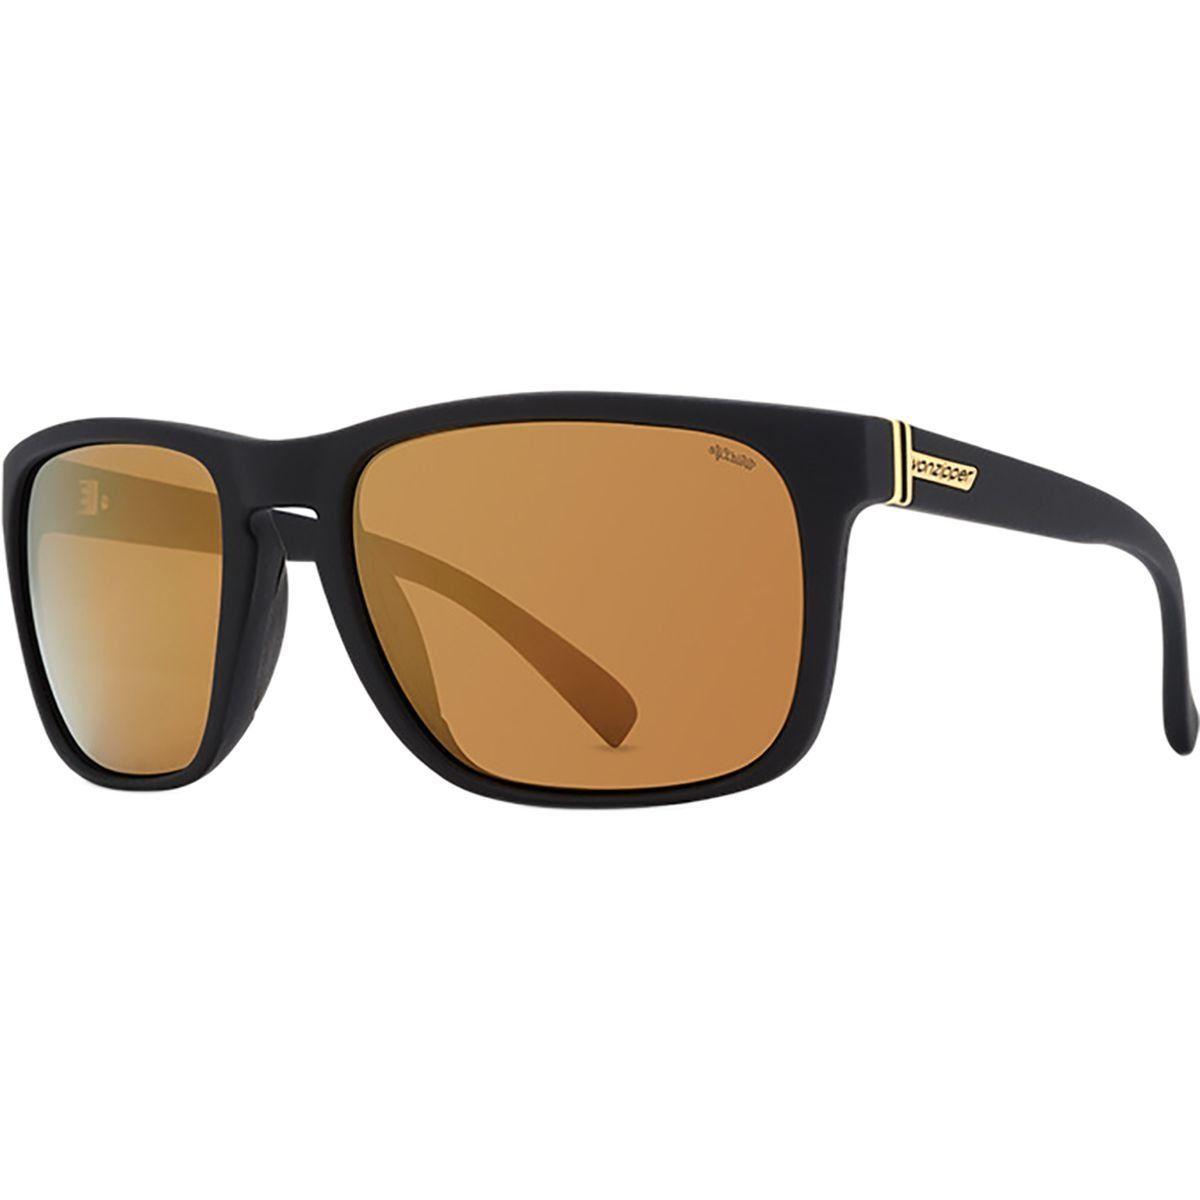 Von Zipper Logo - VonZipper Mens Lomax Sunglasses, BlckGlossw GoldFlash